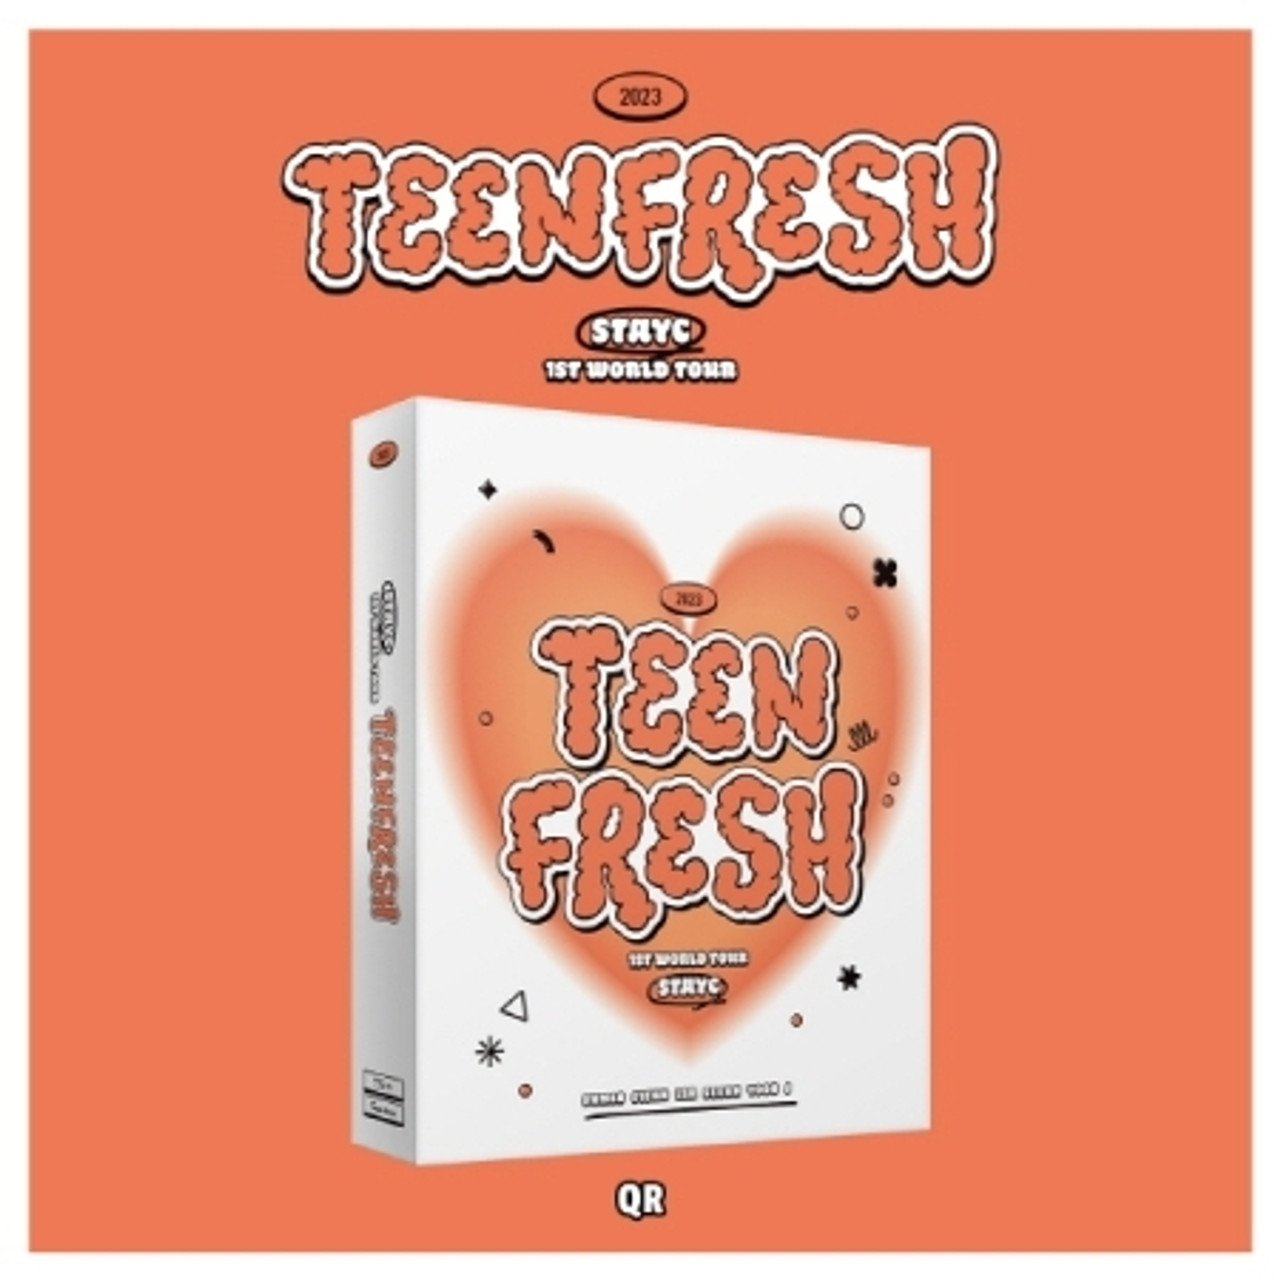 STAYC – 1st World Tour [Teenfresh] QR